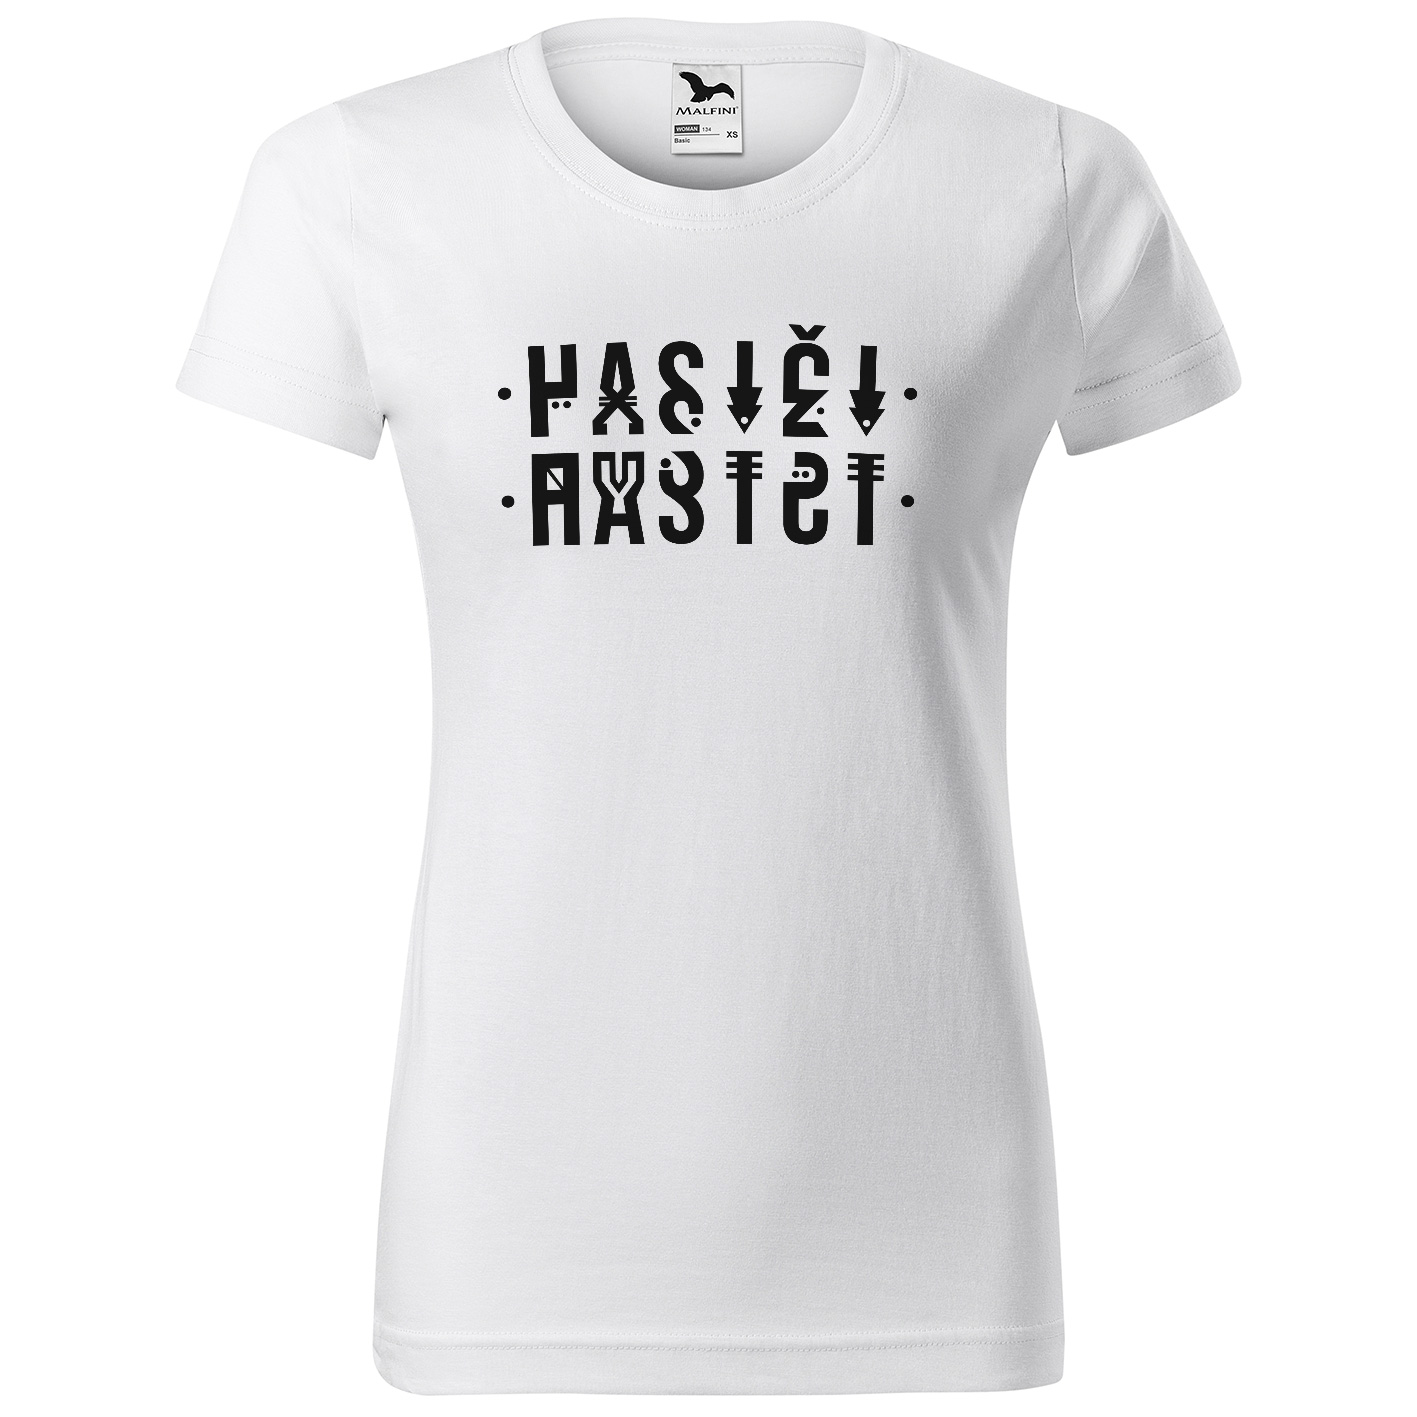 Tričko Hasiči – šifra (Velikost: 2XL, Typ: pro ženy, Barva trička: Bílá)